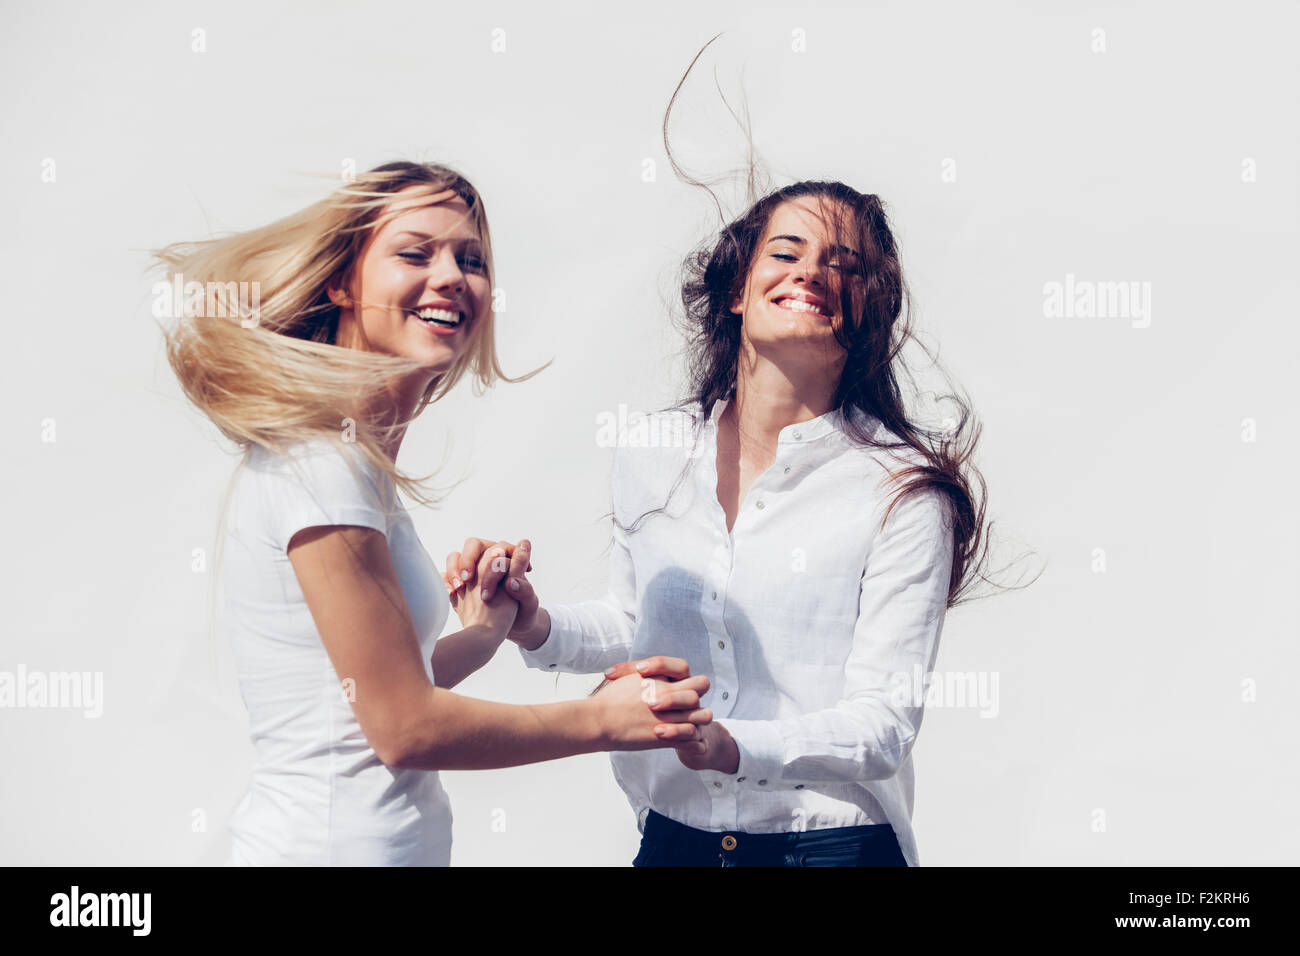 Zwei junge Frauen, die Hand in Hand wirft ihr Haar vor weißem Hintergrund Stockfoto